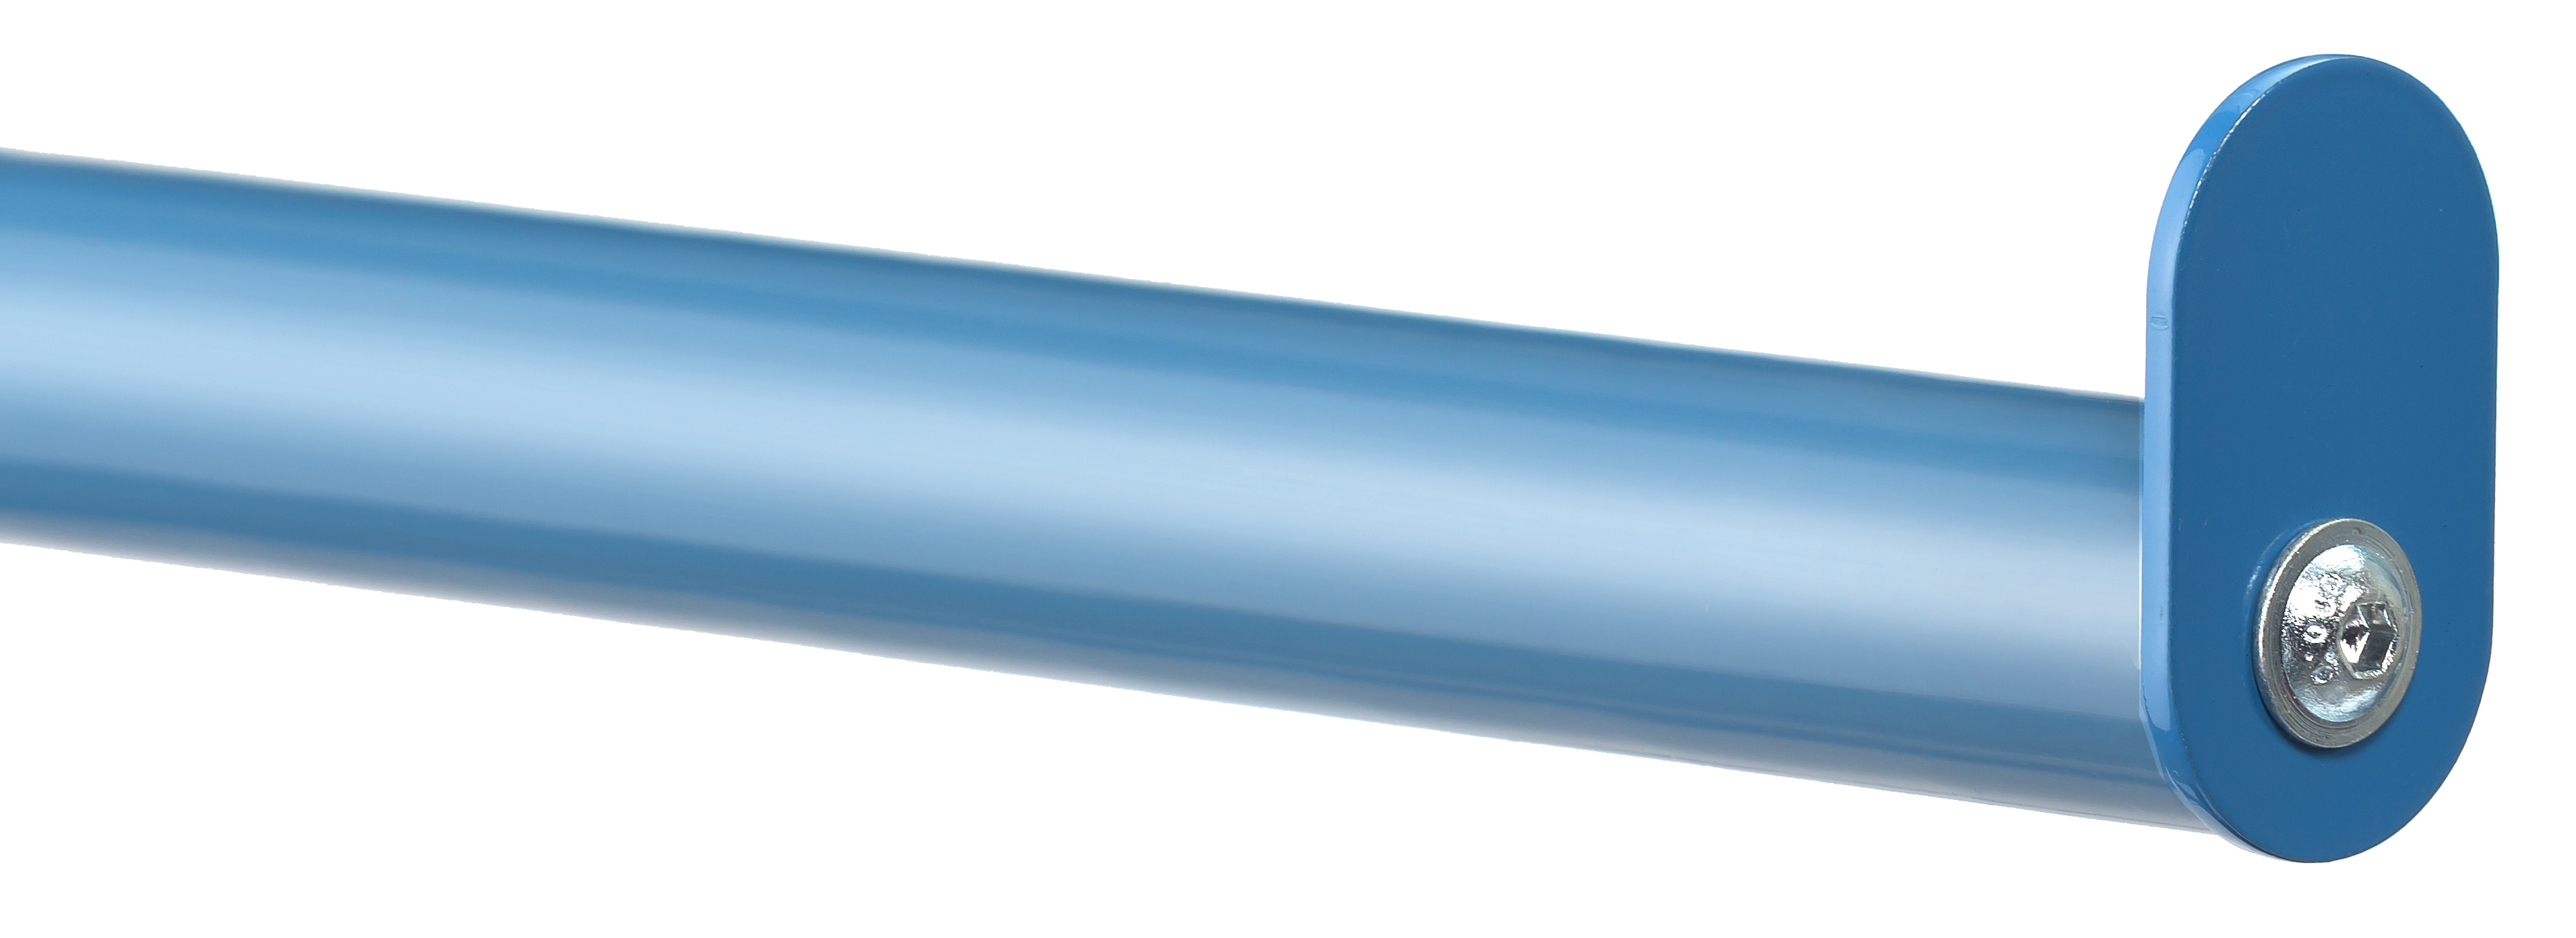 Tragarm 370 mm lang mit PVC-Schlauch - Zubehör -